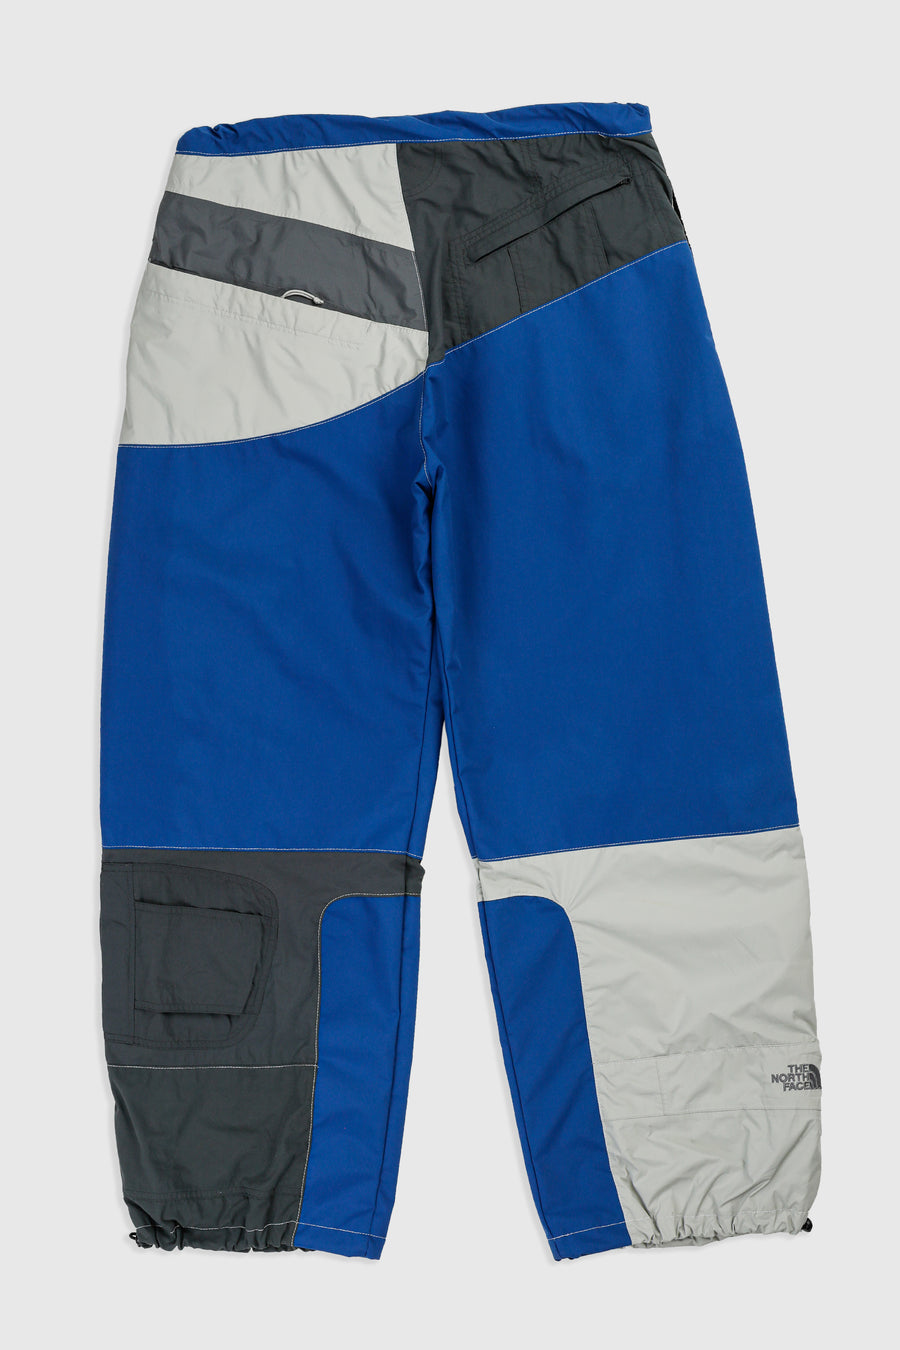 Rework Outerwear Pant - XL